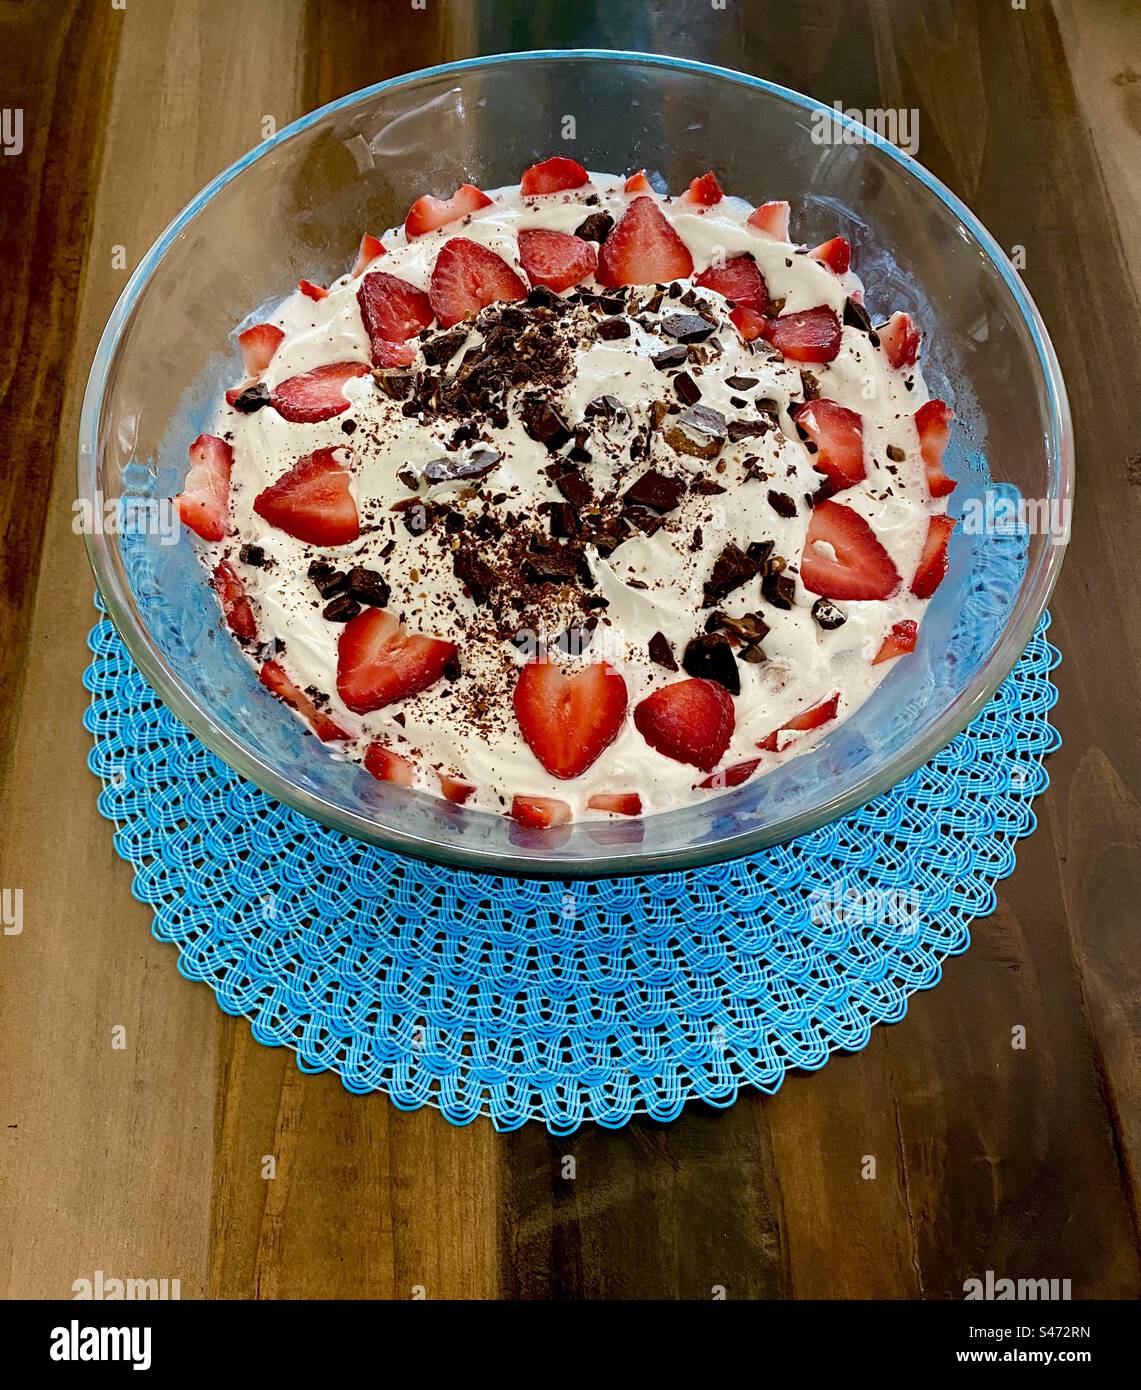 Dessert trifle à base de crème glacée, fraises, crème fouettée et copeaux de chocolat. Banque D'Images